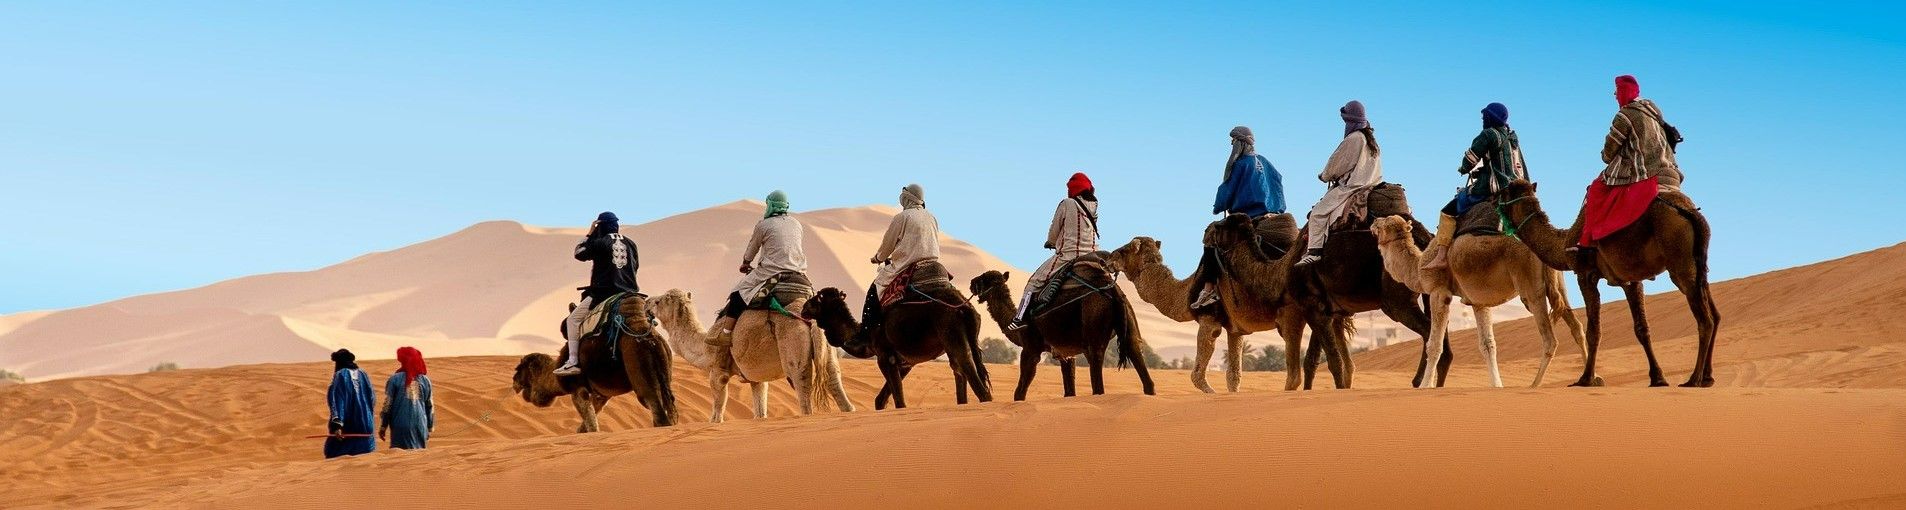 voyage lyon marrakech tout compris